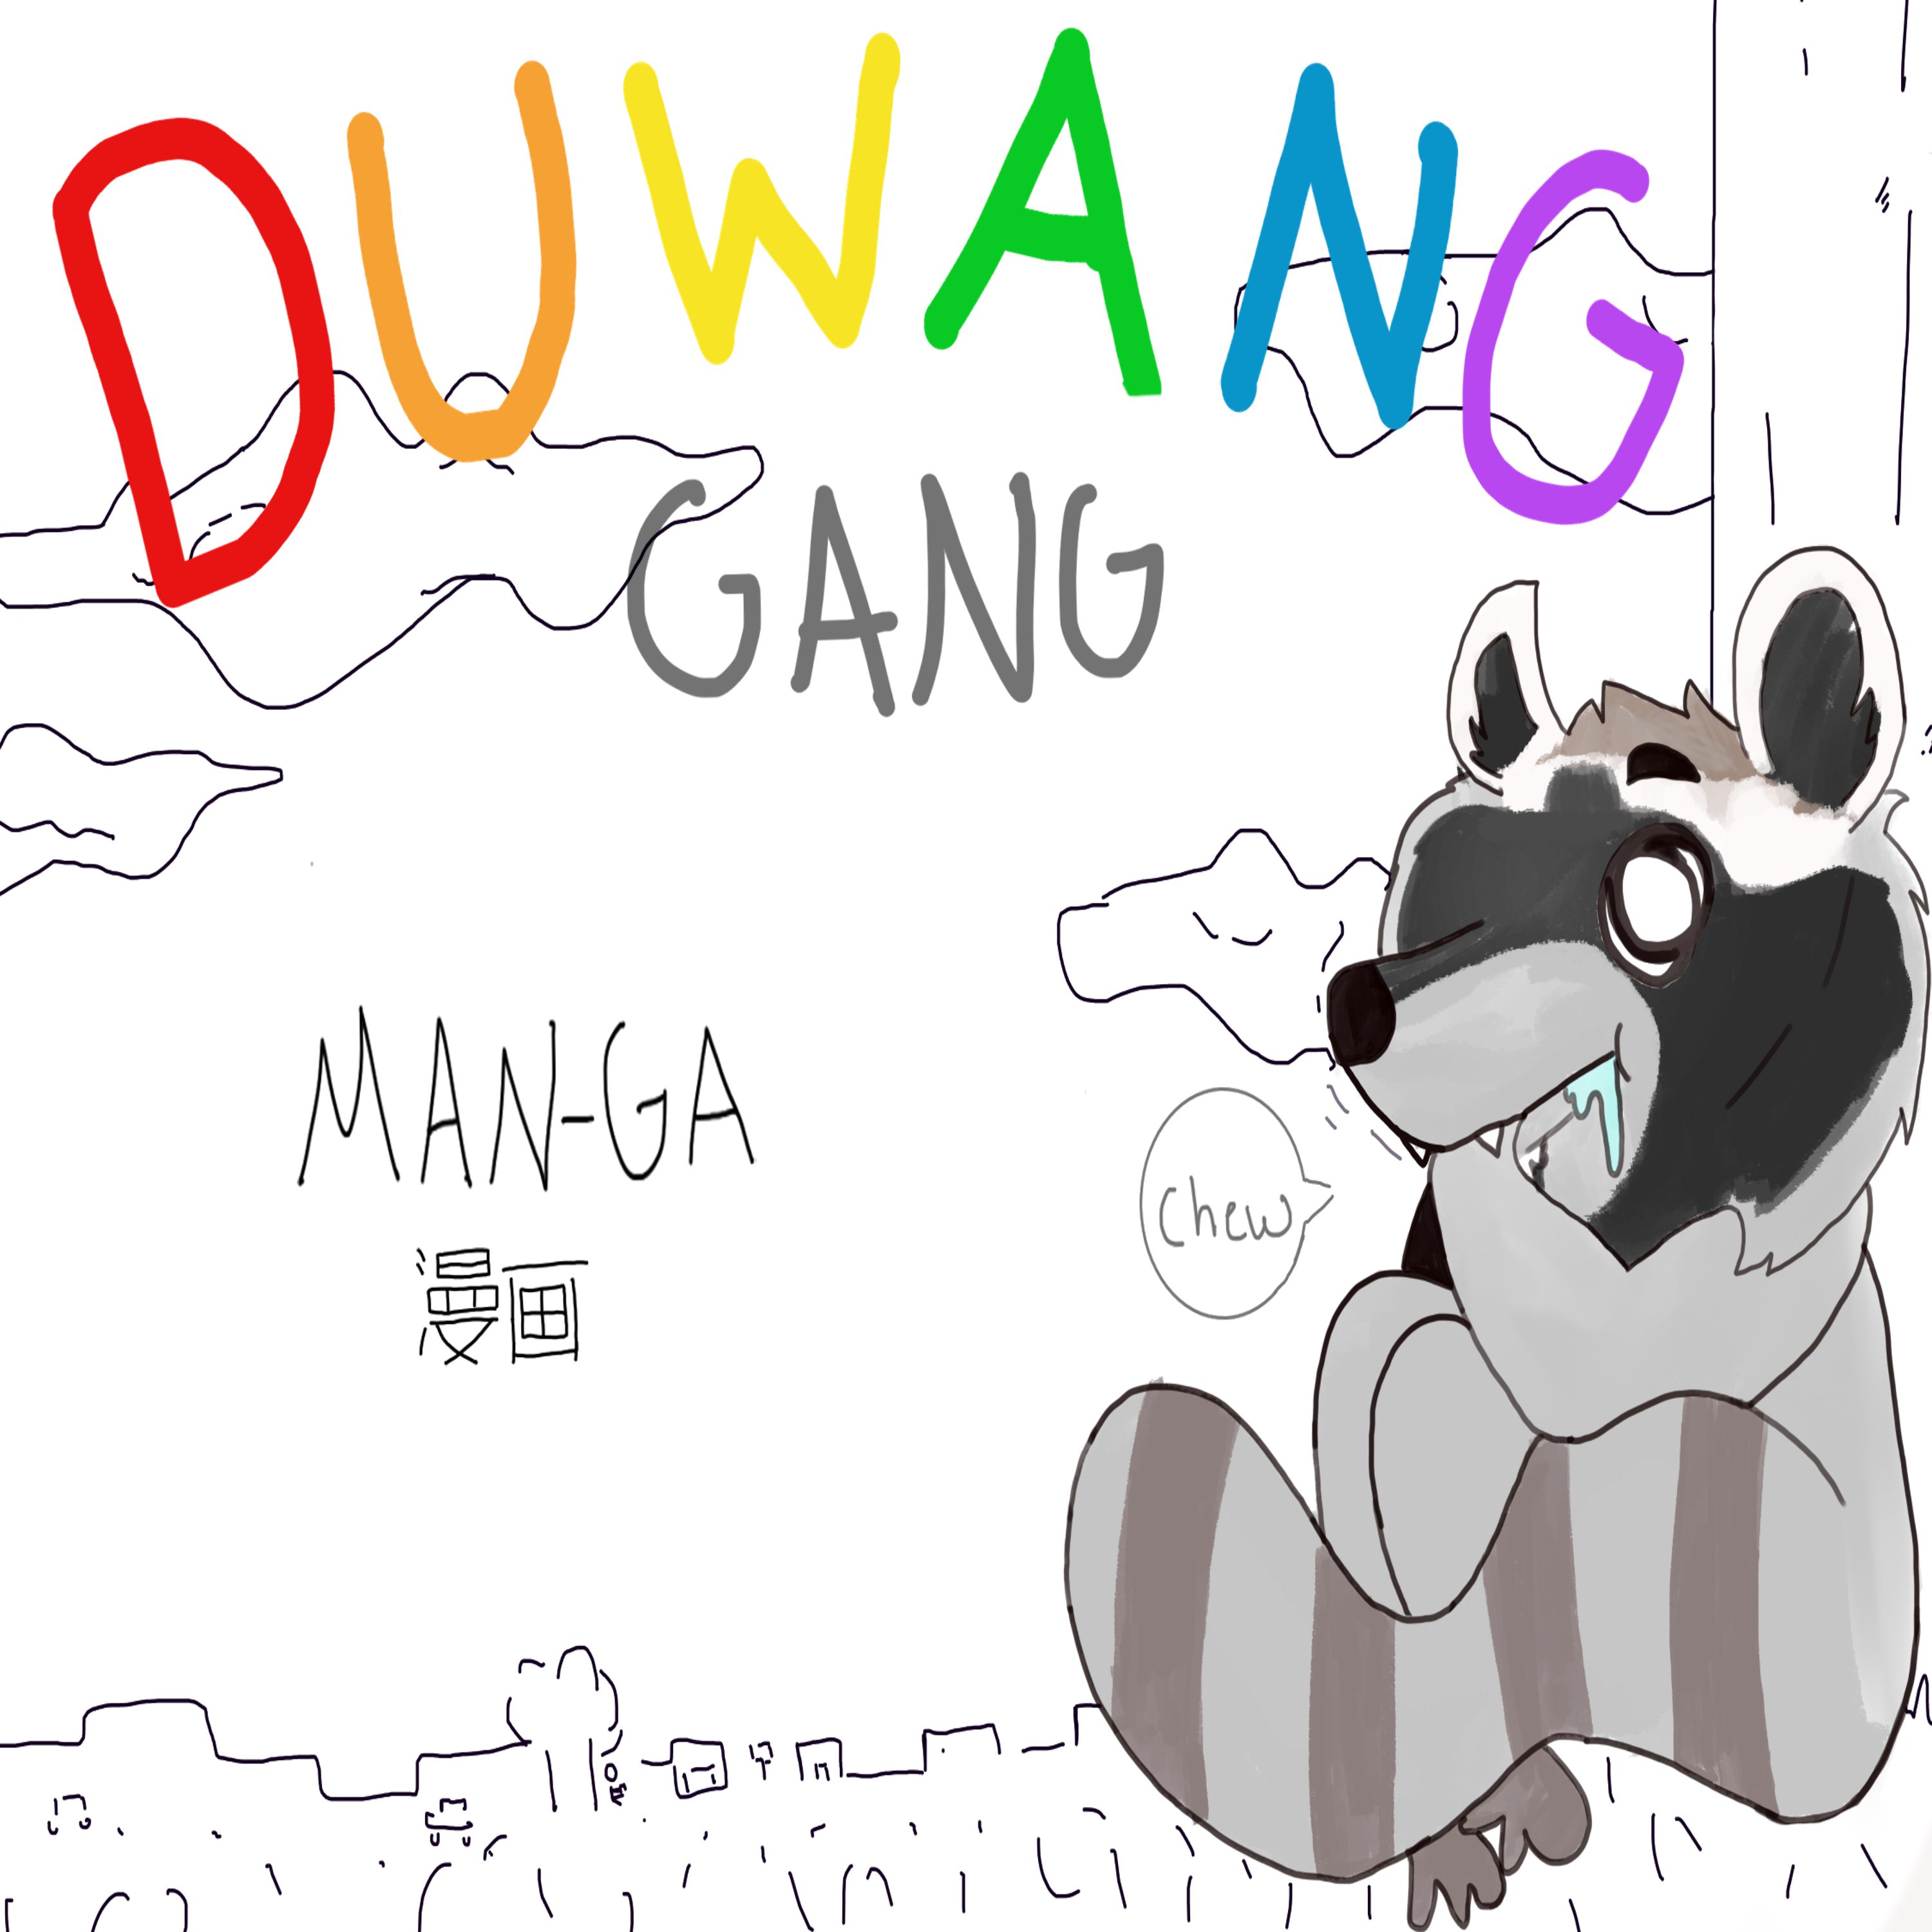 Man-Ga from Duwang Gang